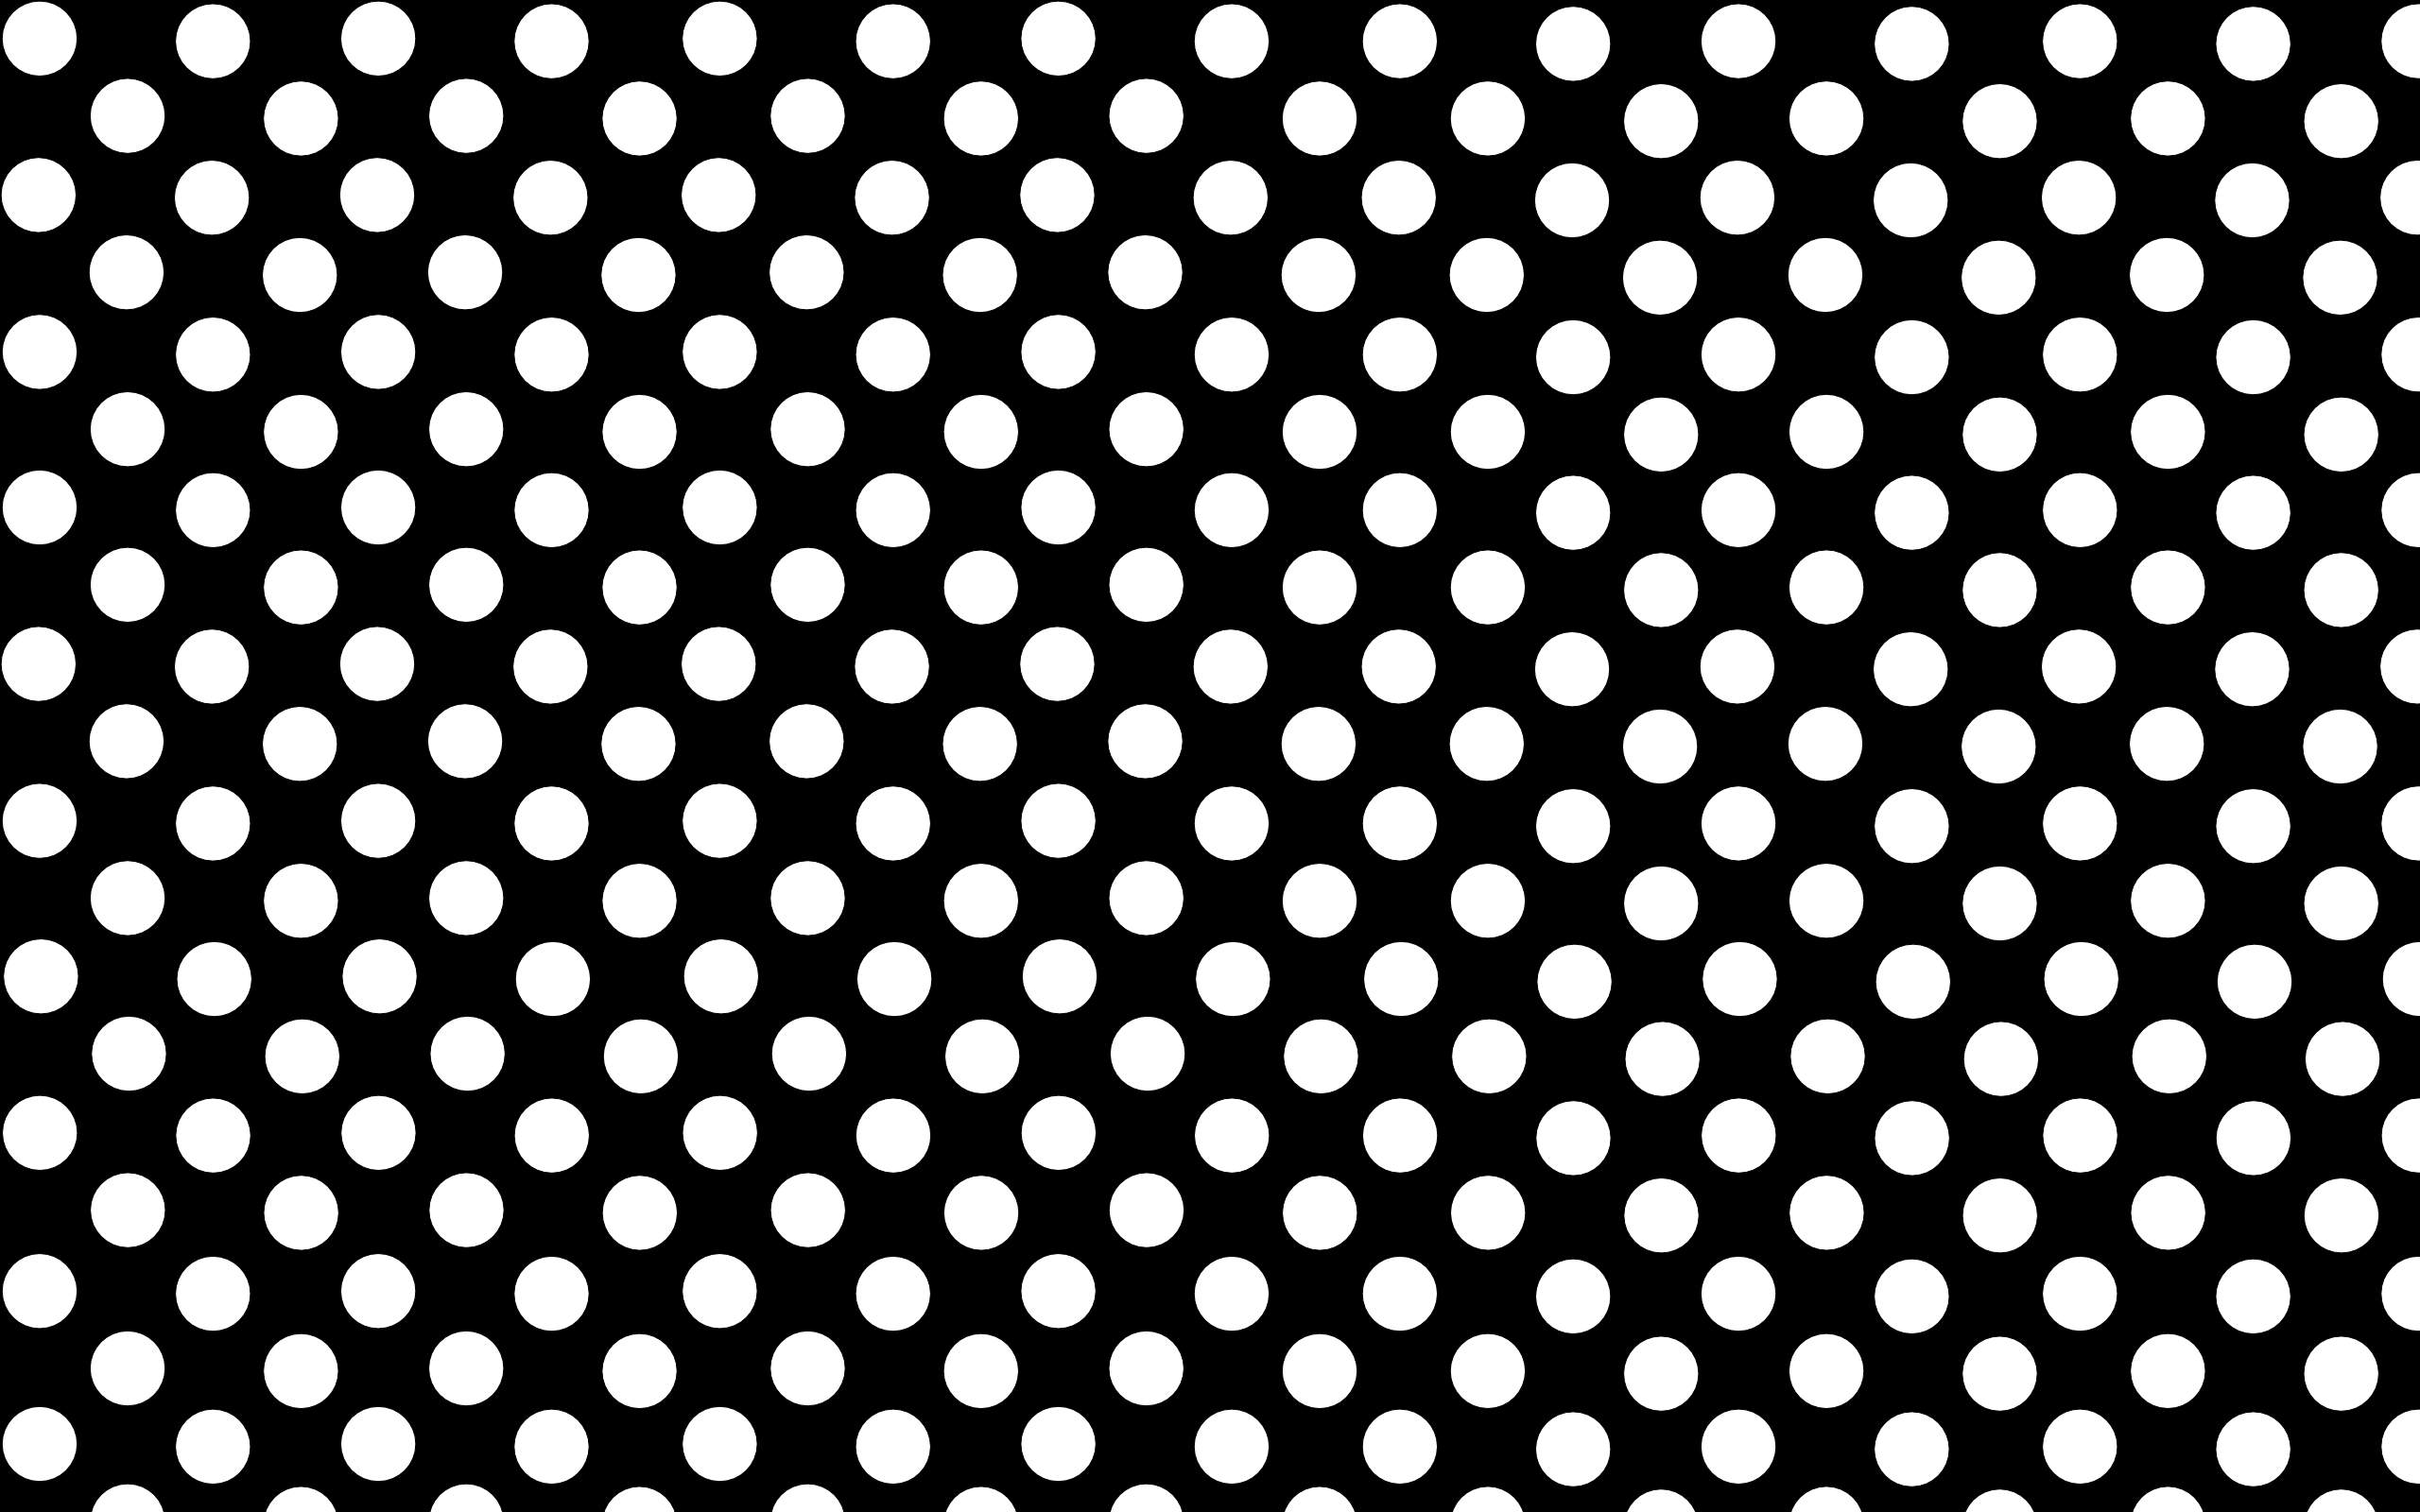 Dot Wallpapers HD | PixelsTalk.Net